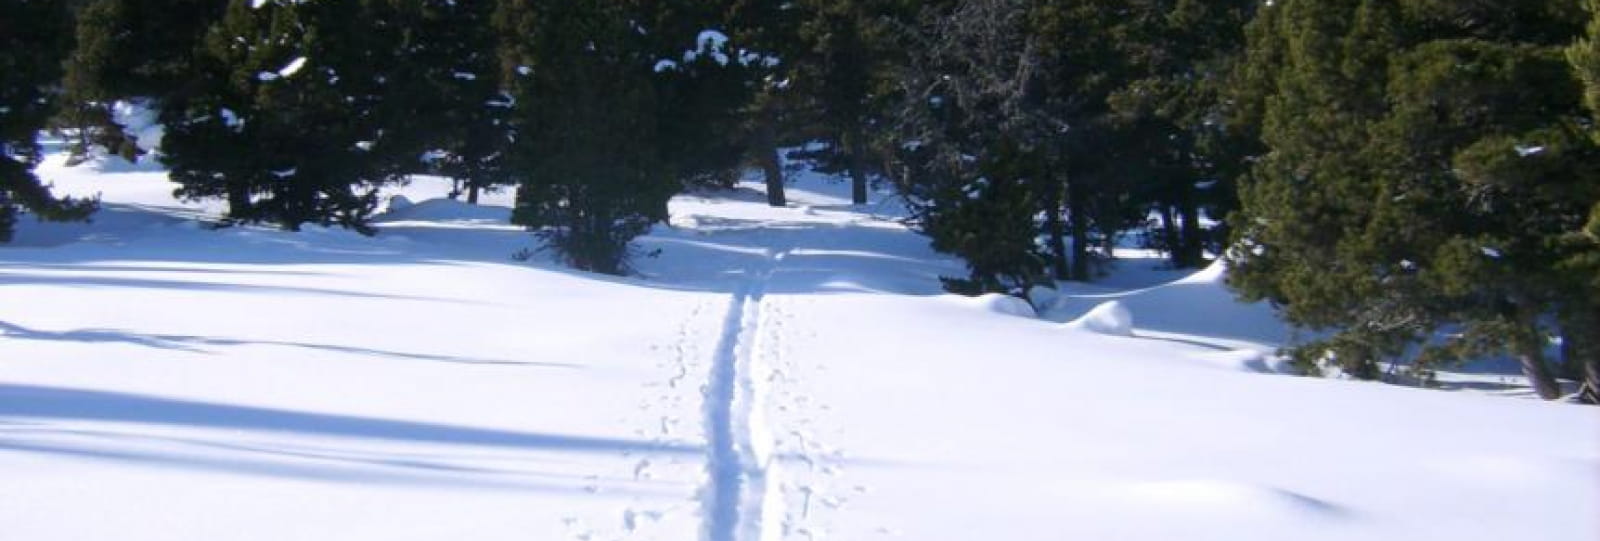 Randonnée en ski nordique avec bivouac en tente trappeur ou en refuge sur les Hauts Plateaux du Vercors